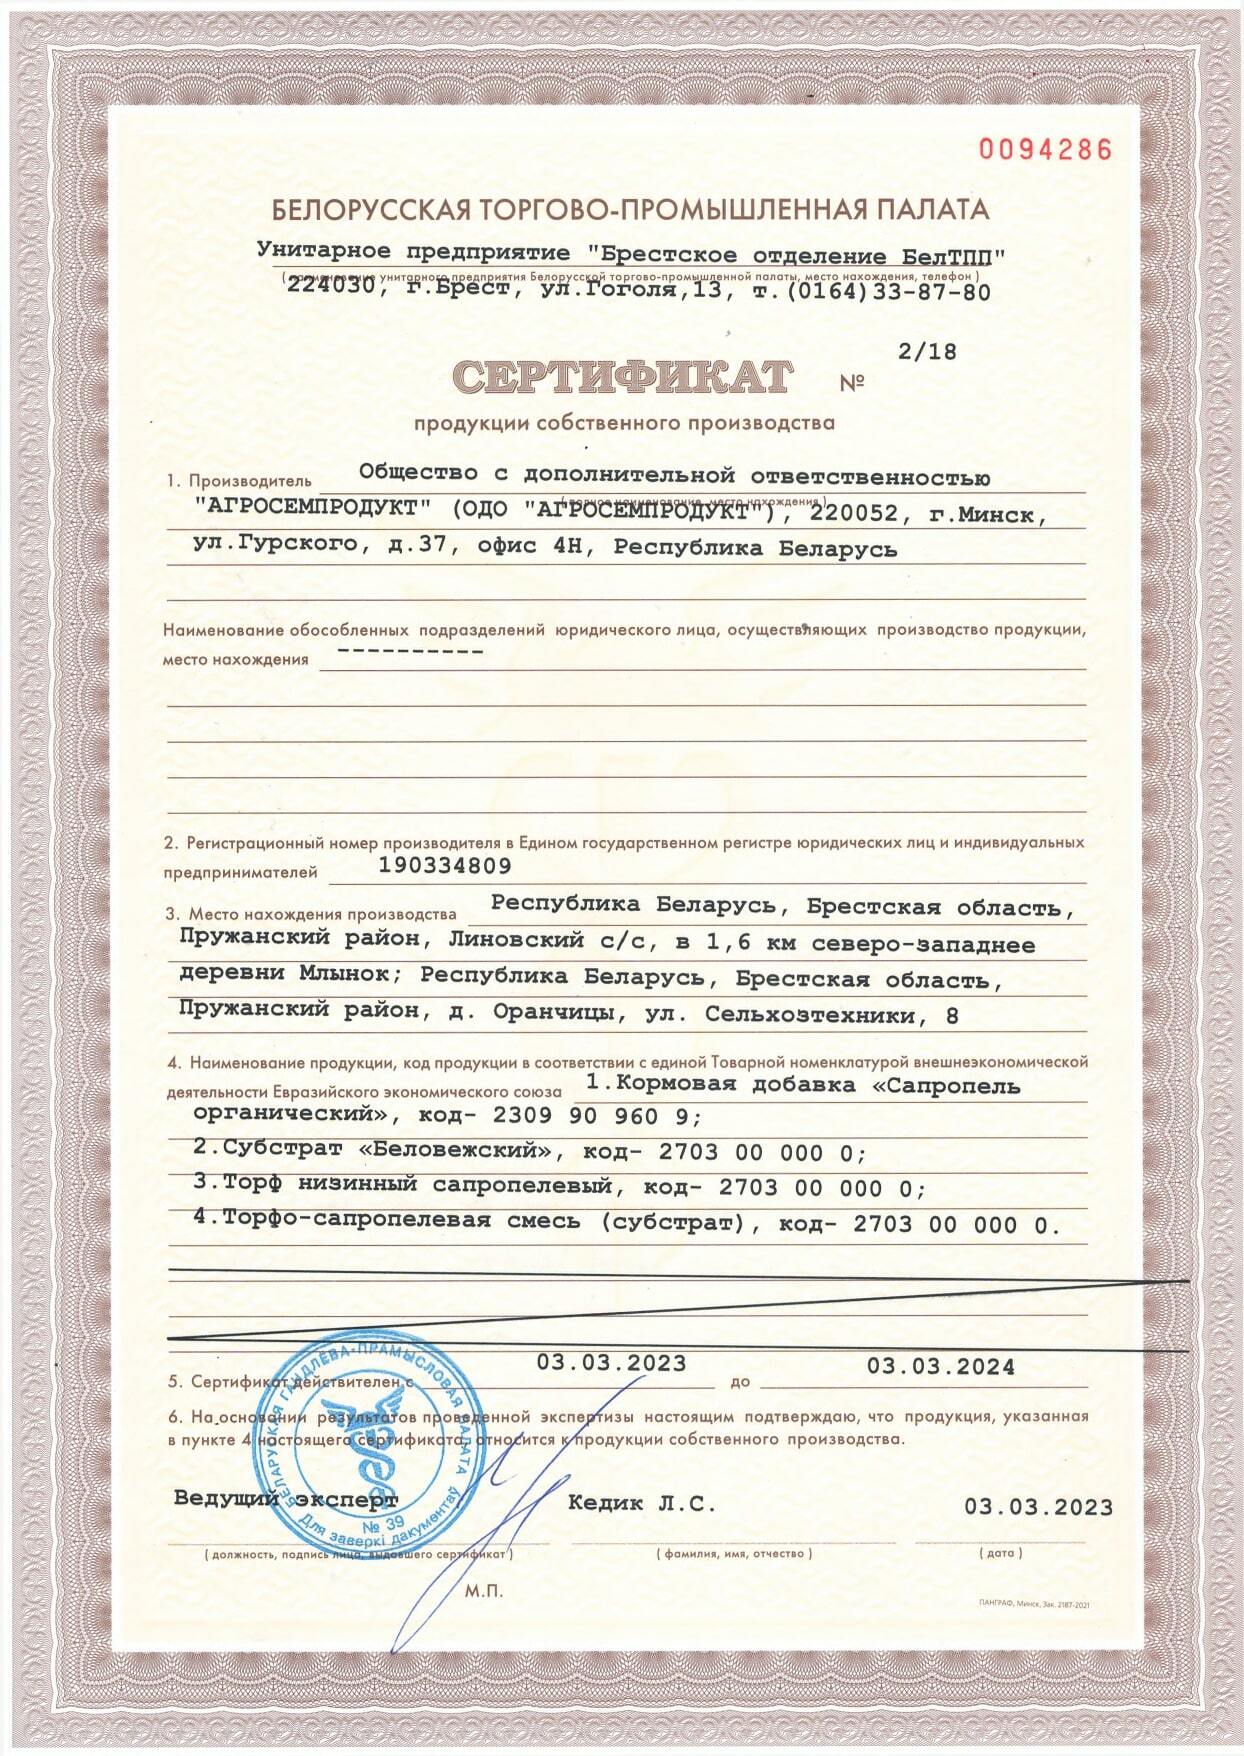 сертификат продукции собственного производства № 2/18 от 03.03.2023